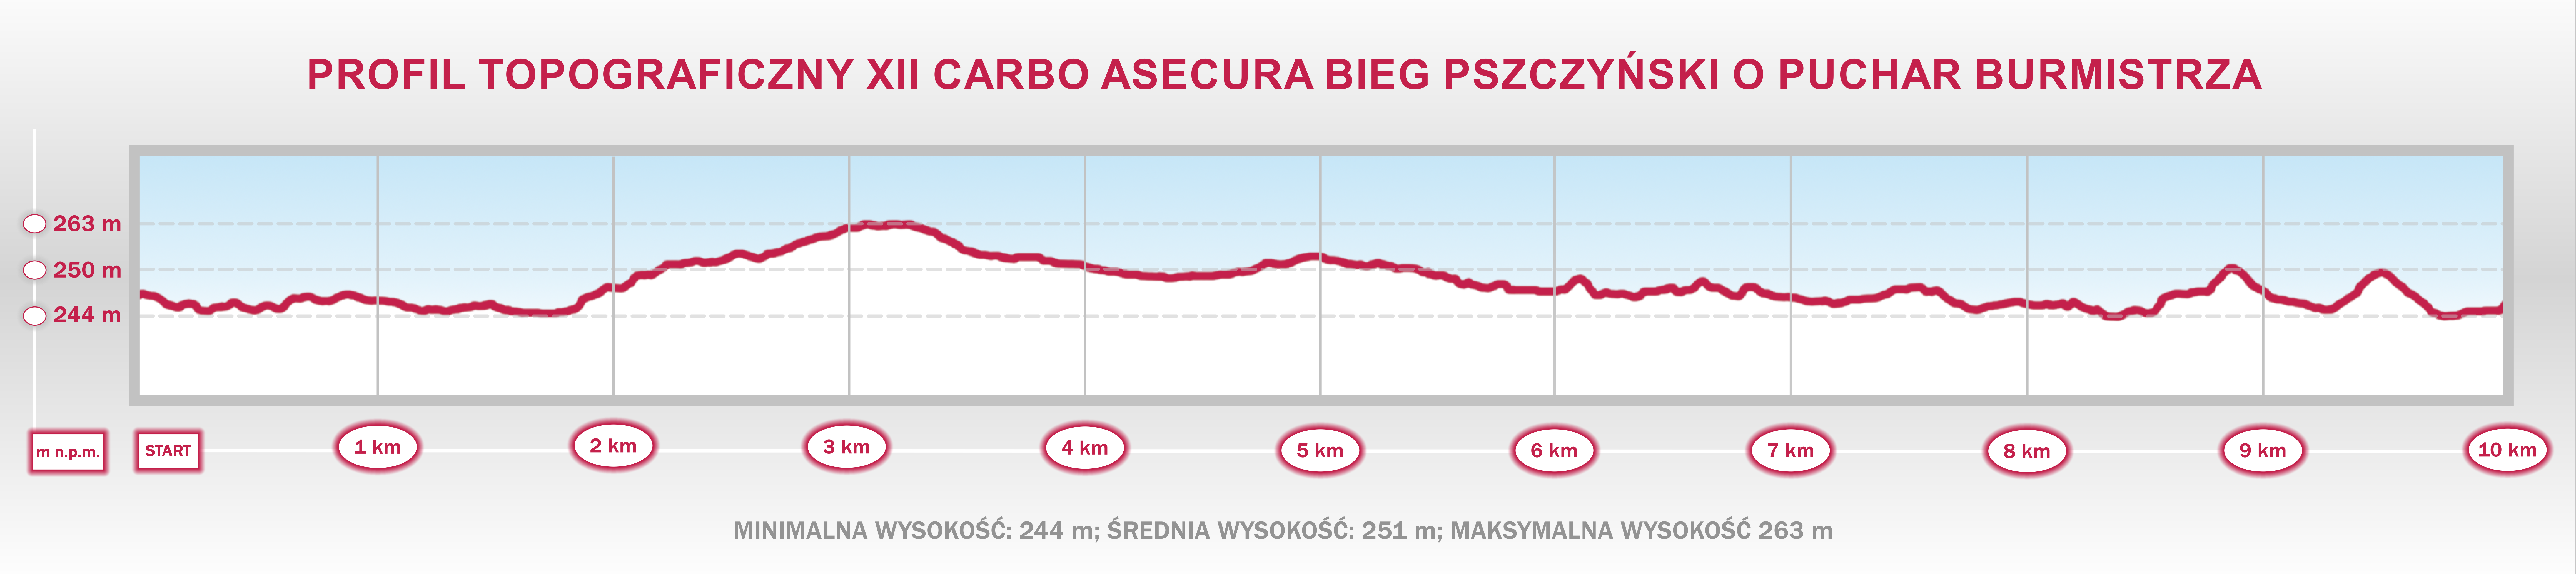 XII Carbo Asecura Bieg Pszczyński - profil topograficzny